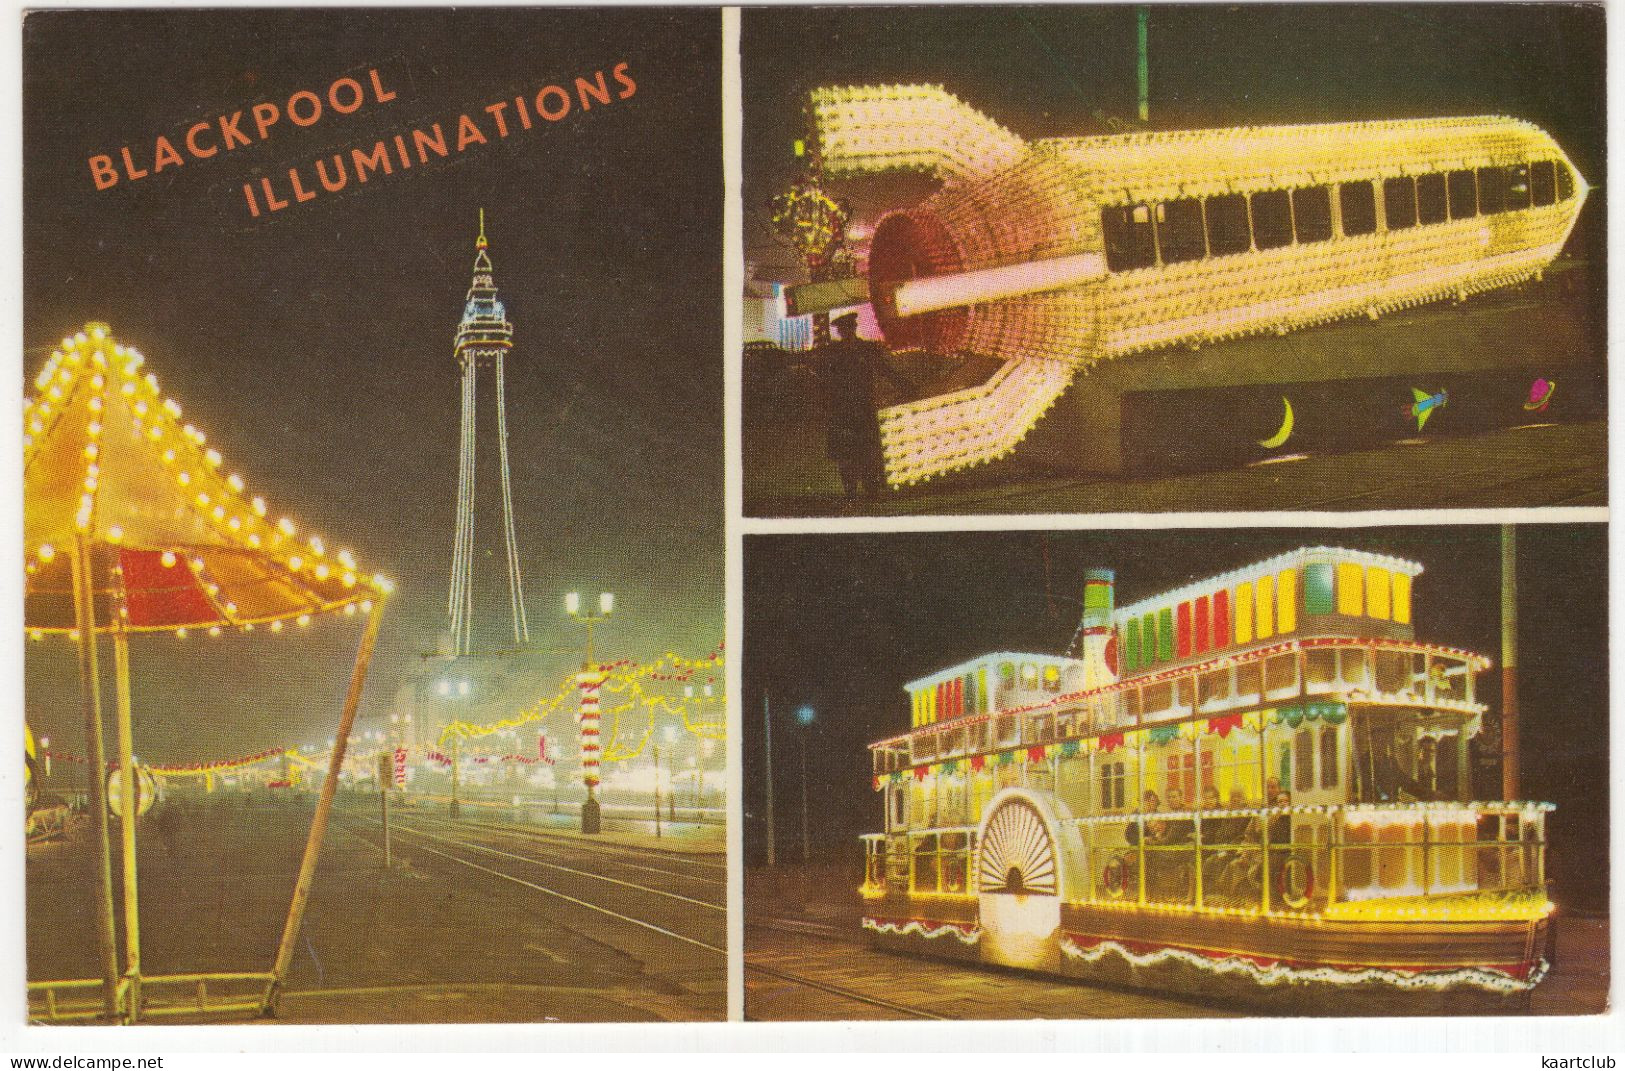 Blackpool Illuminations - (England, U.K.) - Blackpool